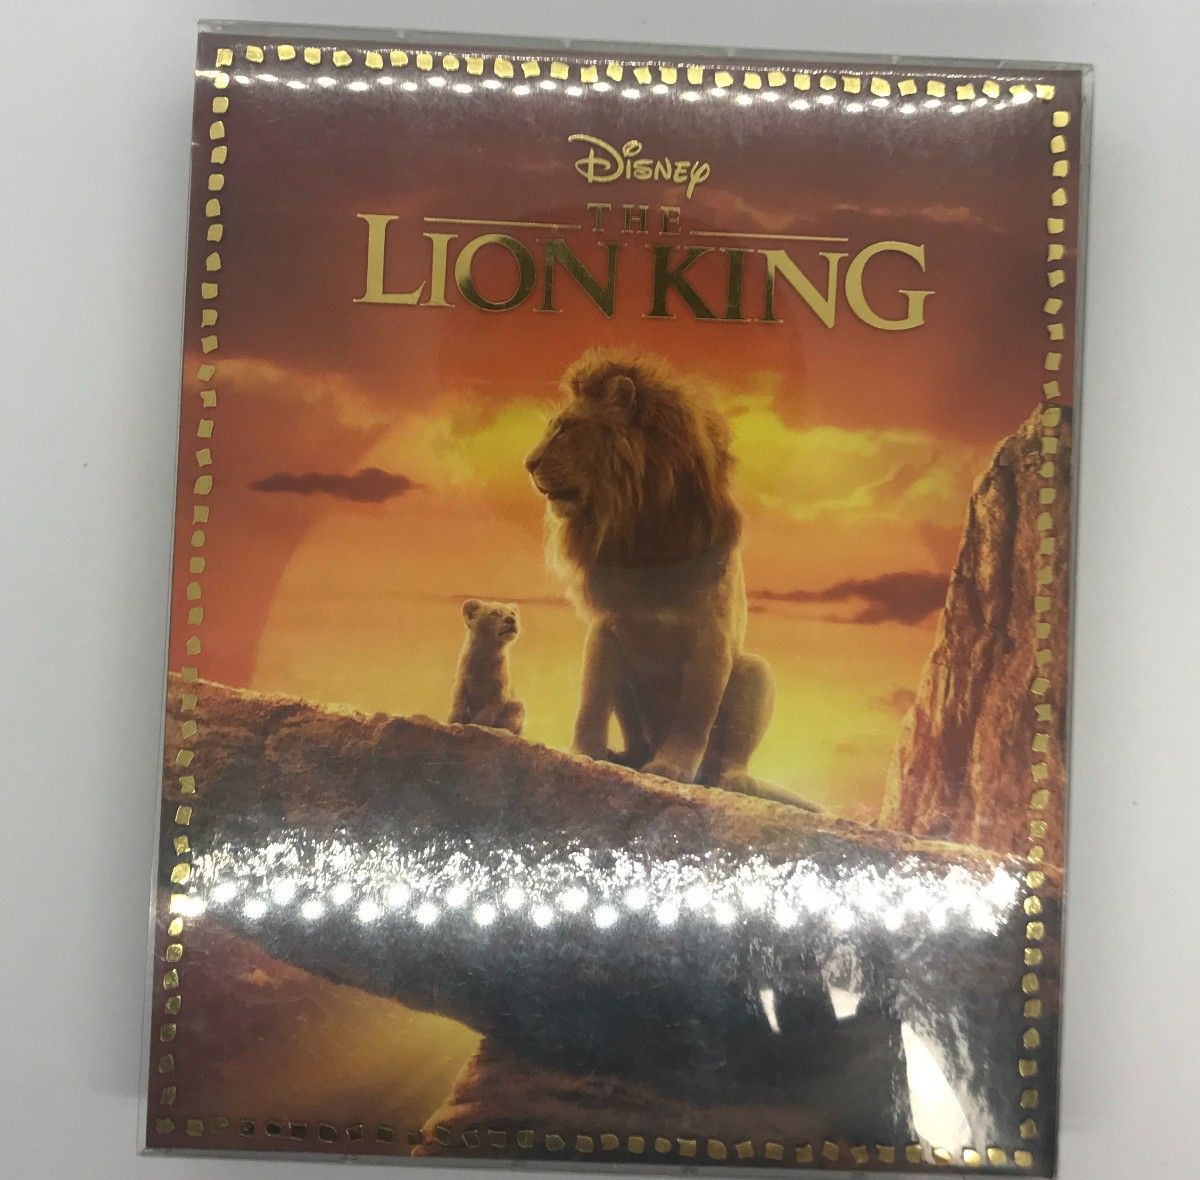 Blu-ray『ライオン・キング(アニメ版)&ライオン・キング(実写版)』 MovieNEX  ディズニー